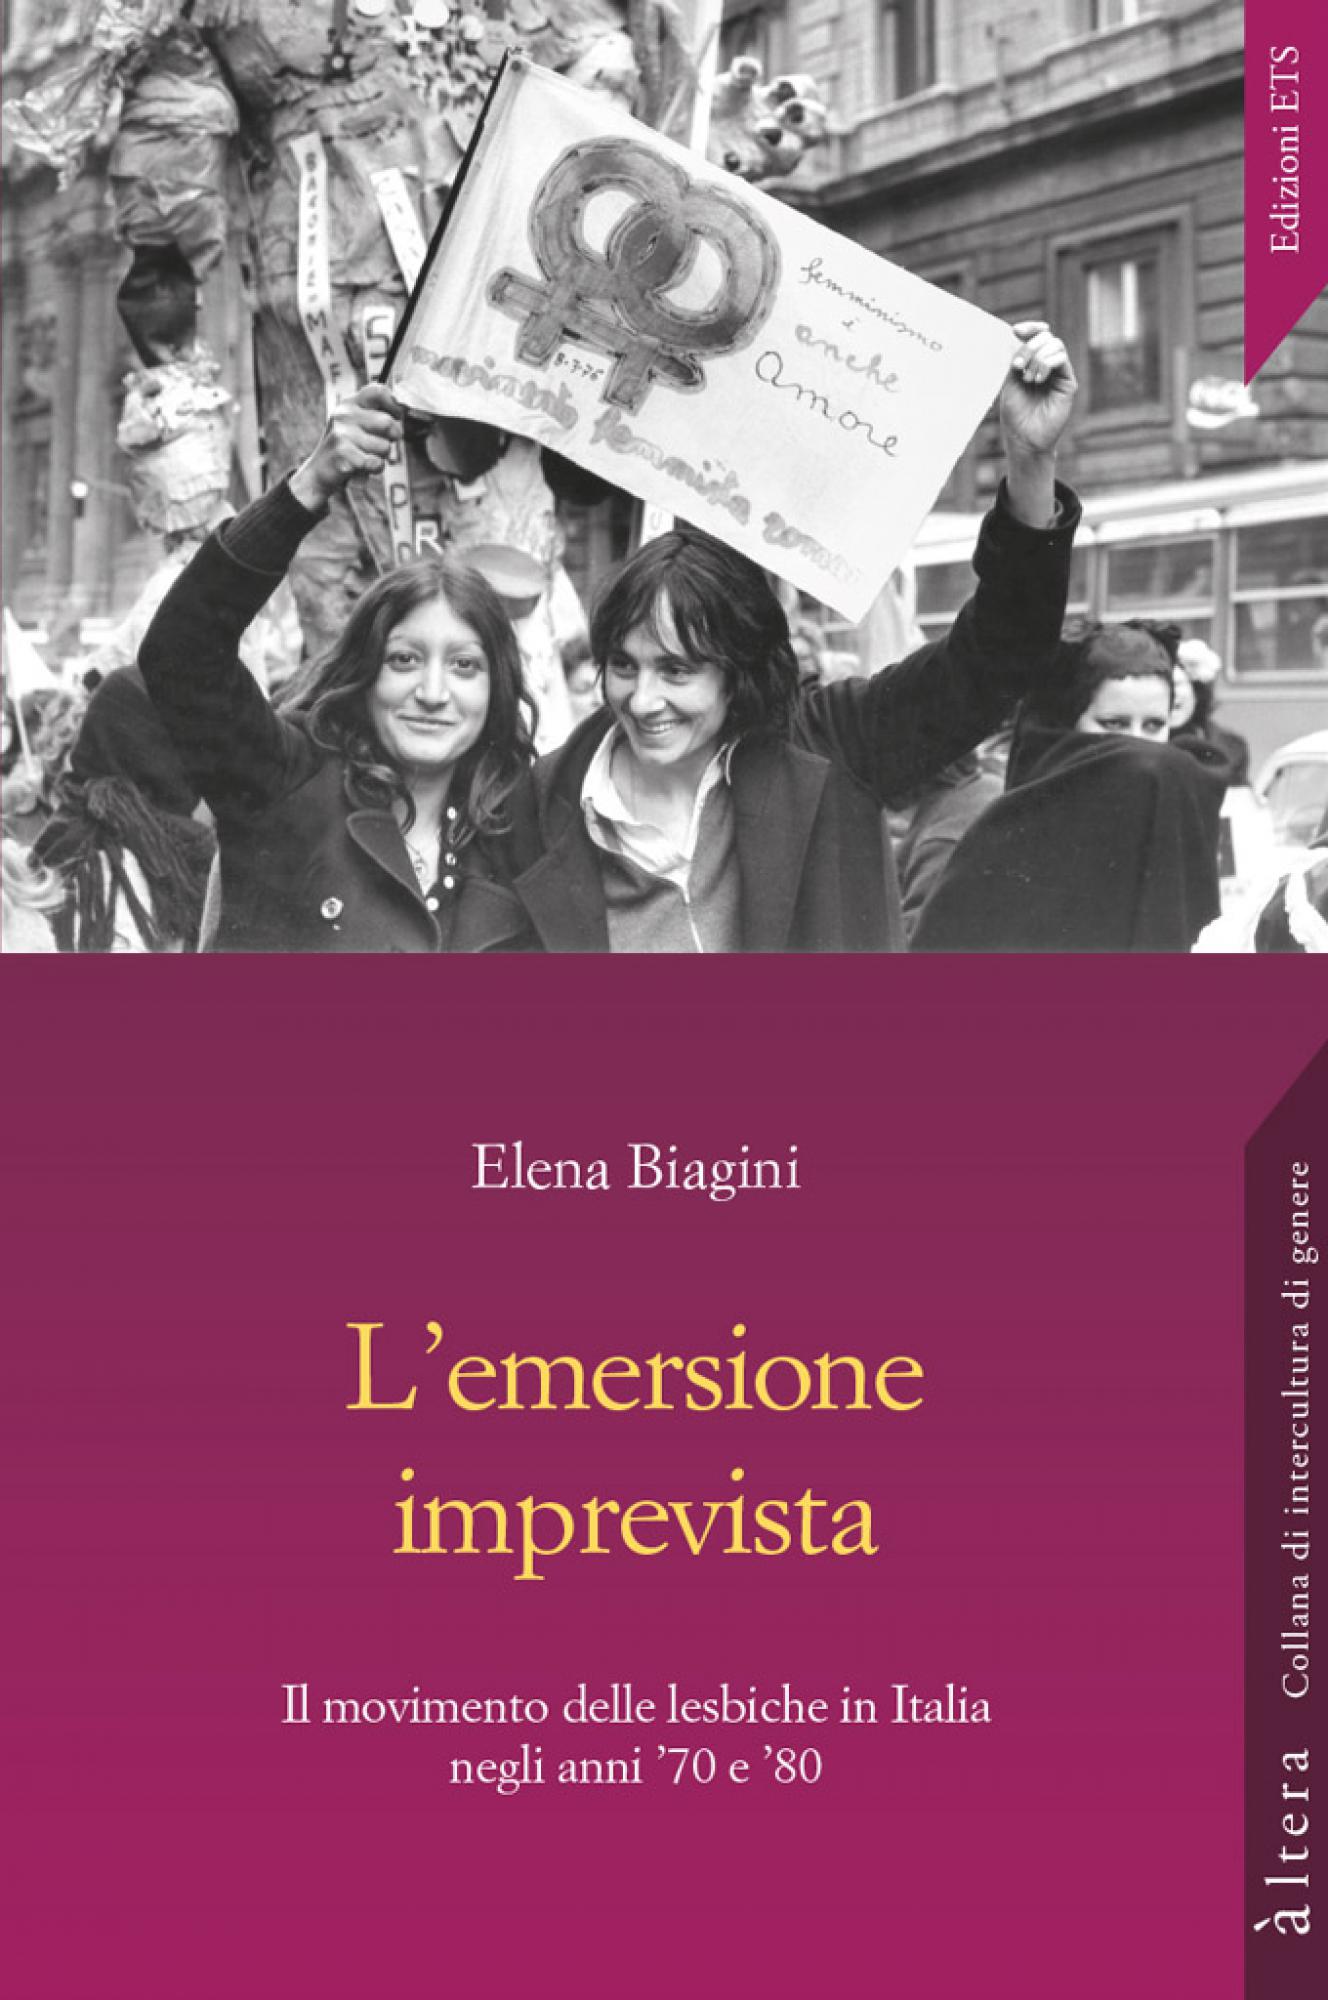 L'emersione imprevista (Italiano language, 2018, ETS)